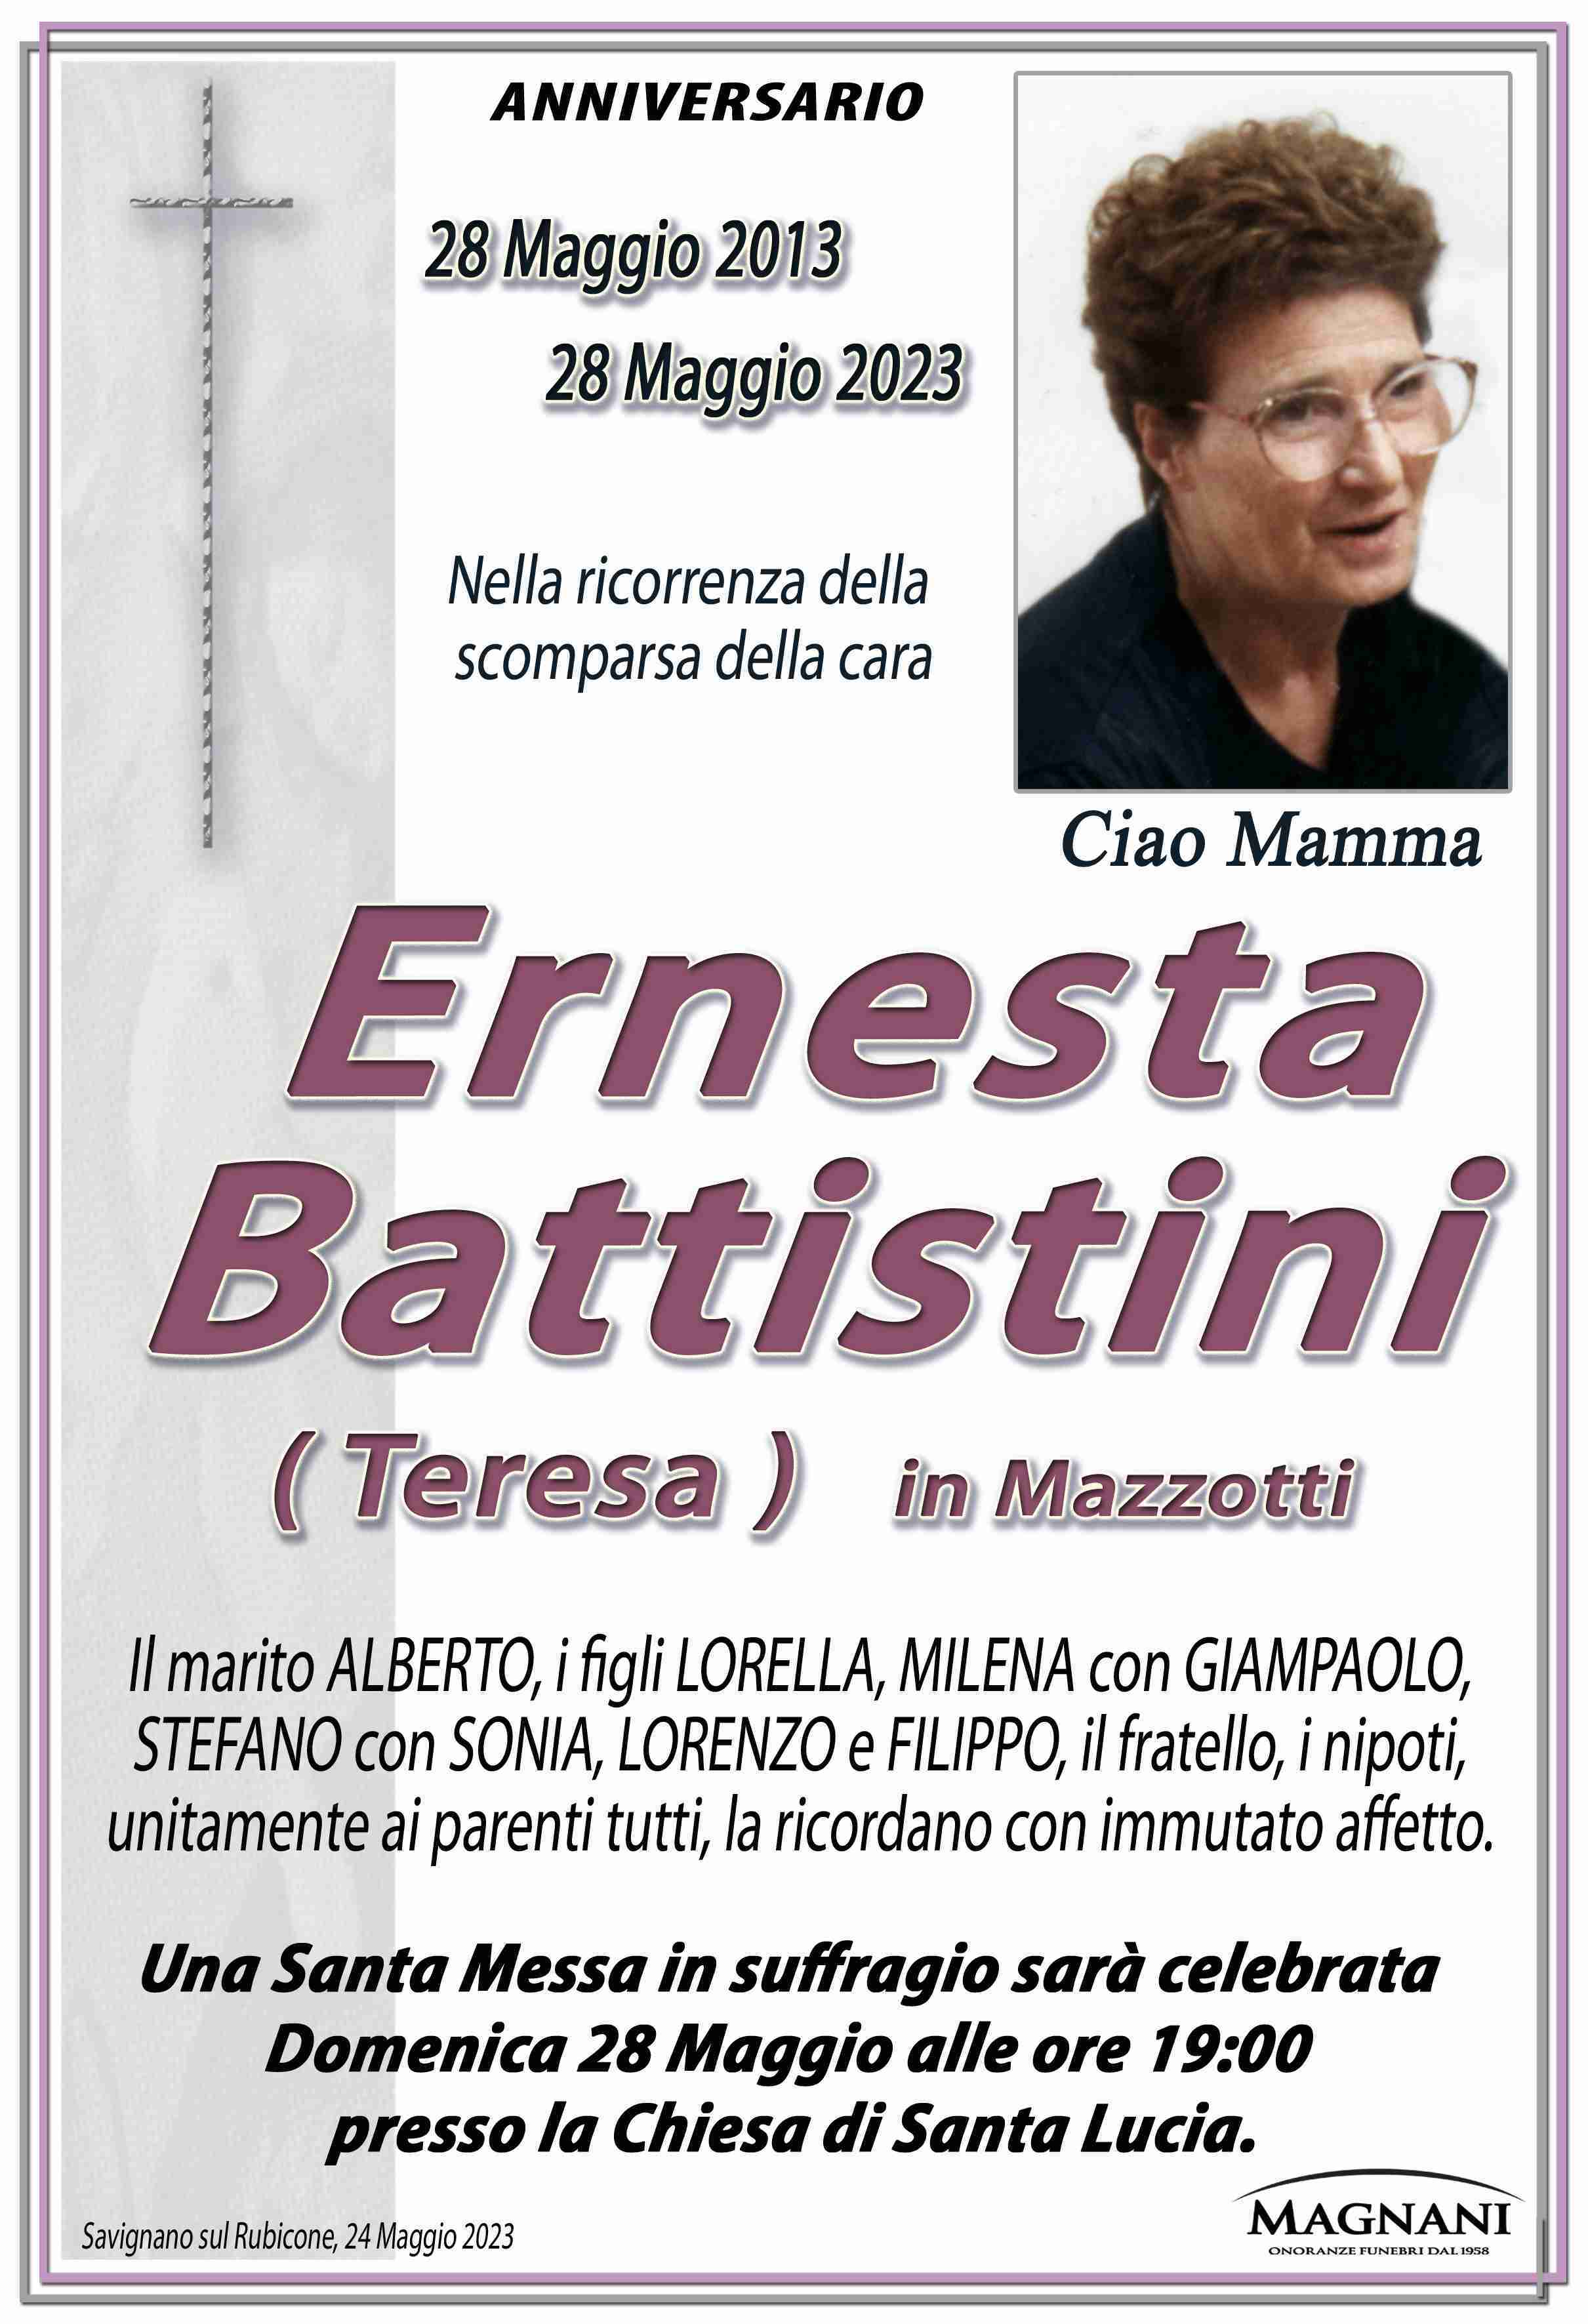 Ernesta Battistini